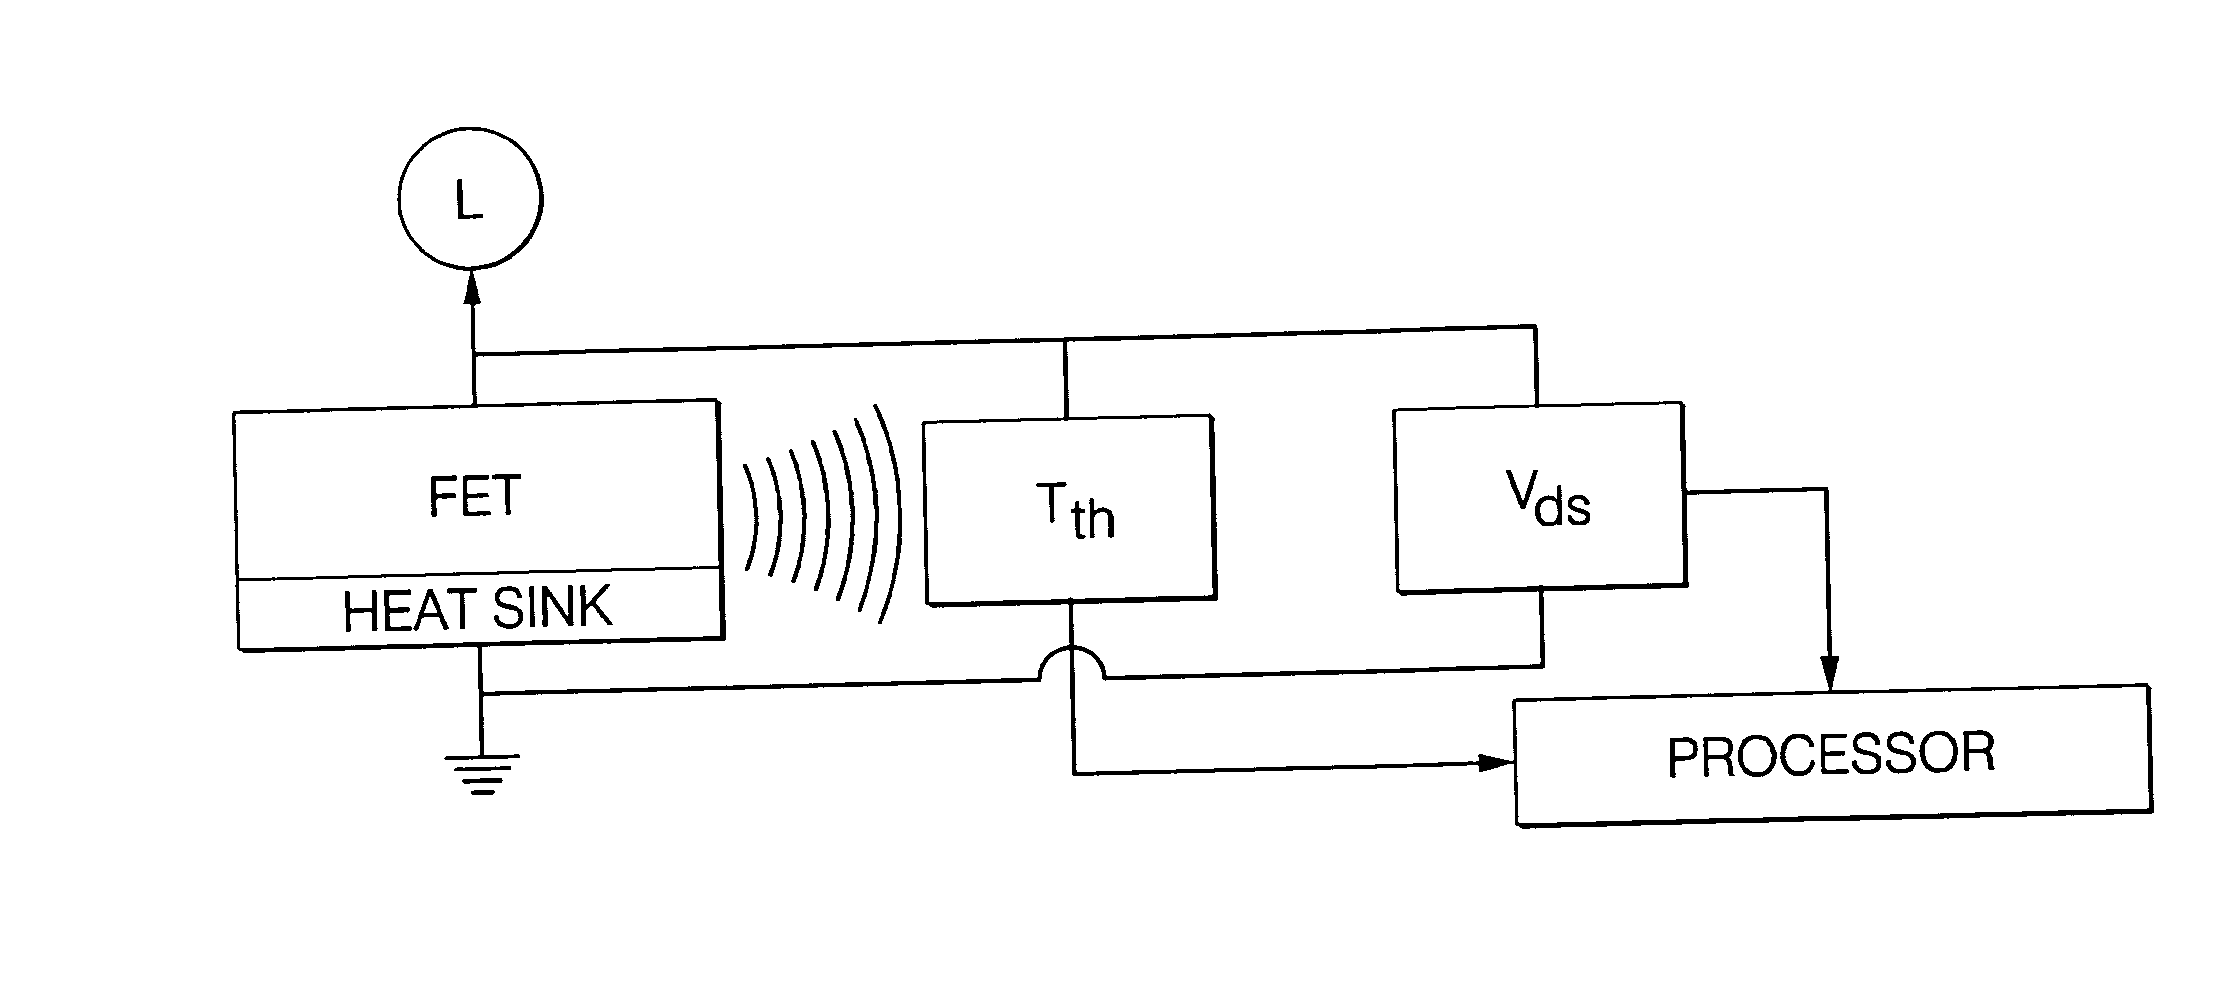 Method of determining FET junction temperature